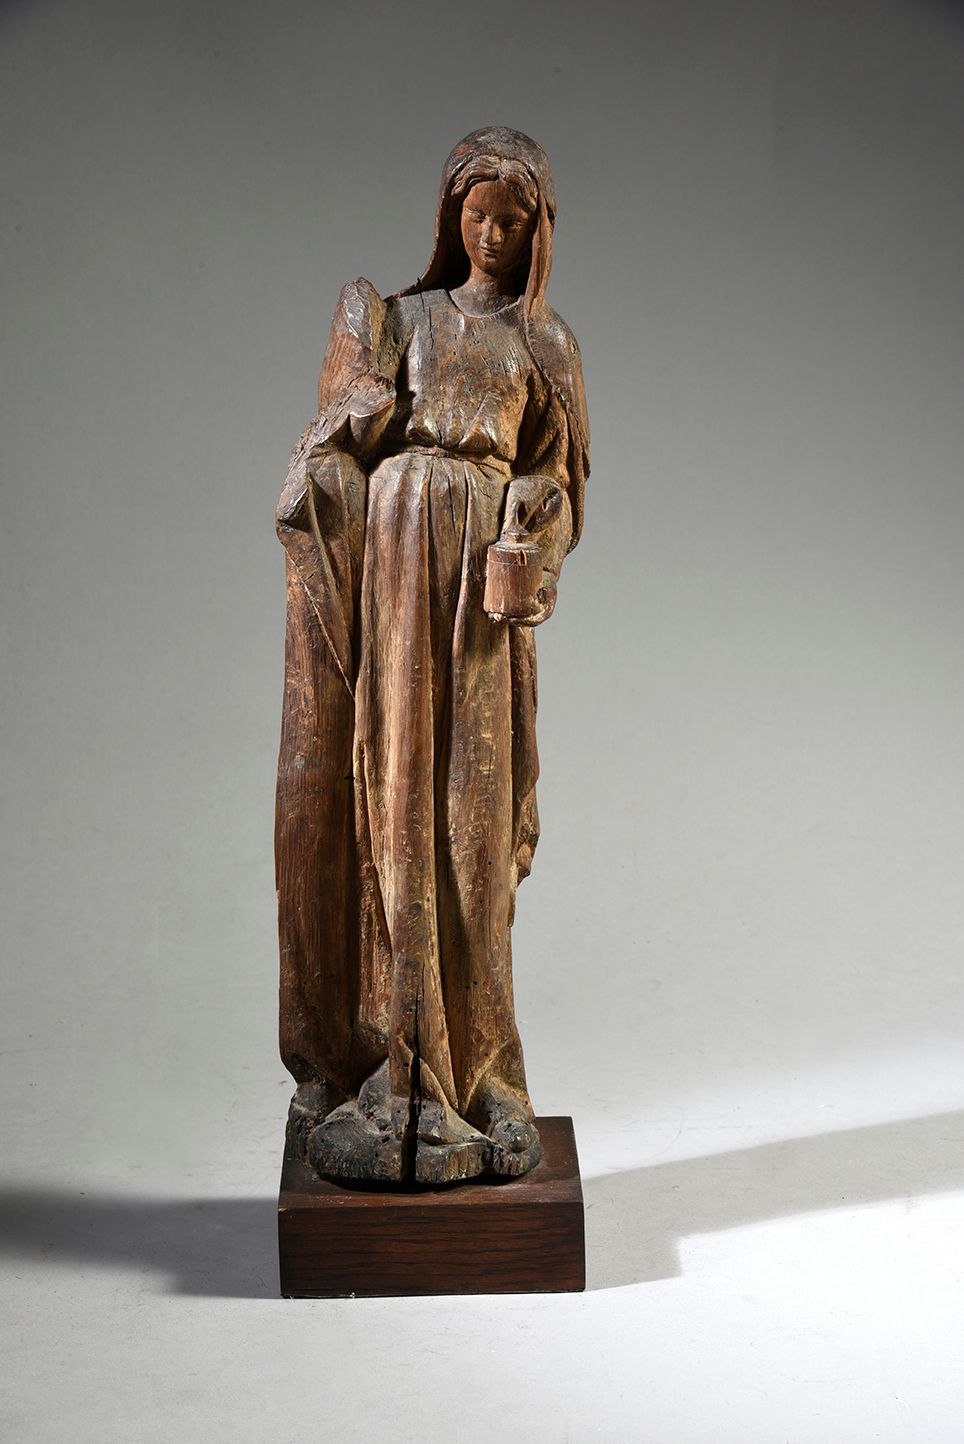 Null Heilige myrophore Frau aus geschnitzter Eiche, Teil einer Grablegung.
Nordf&hellip;